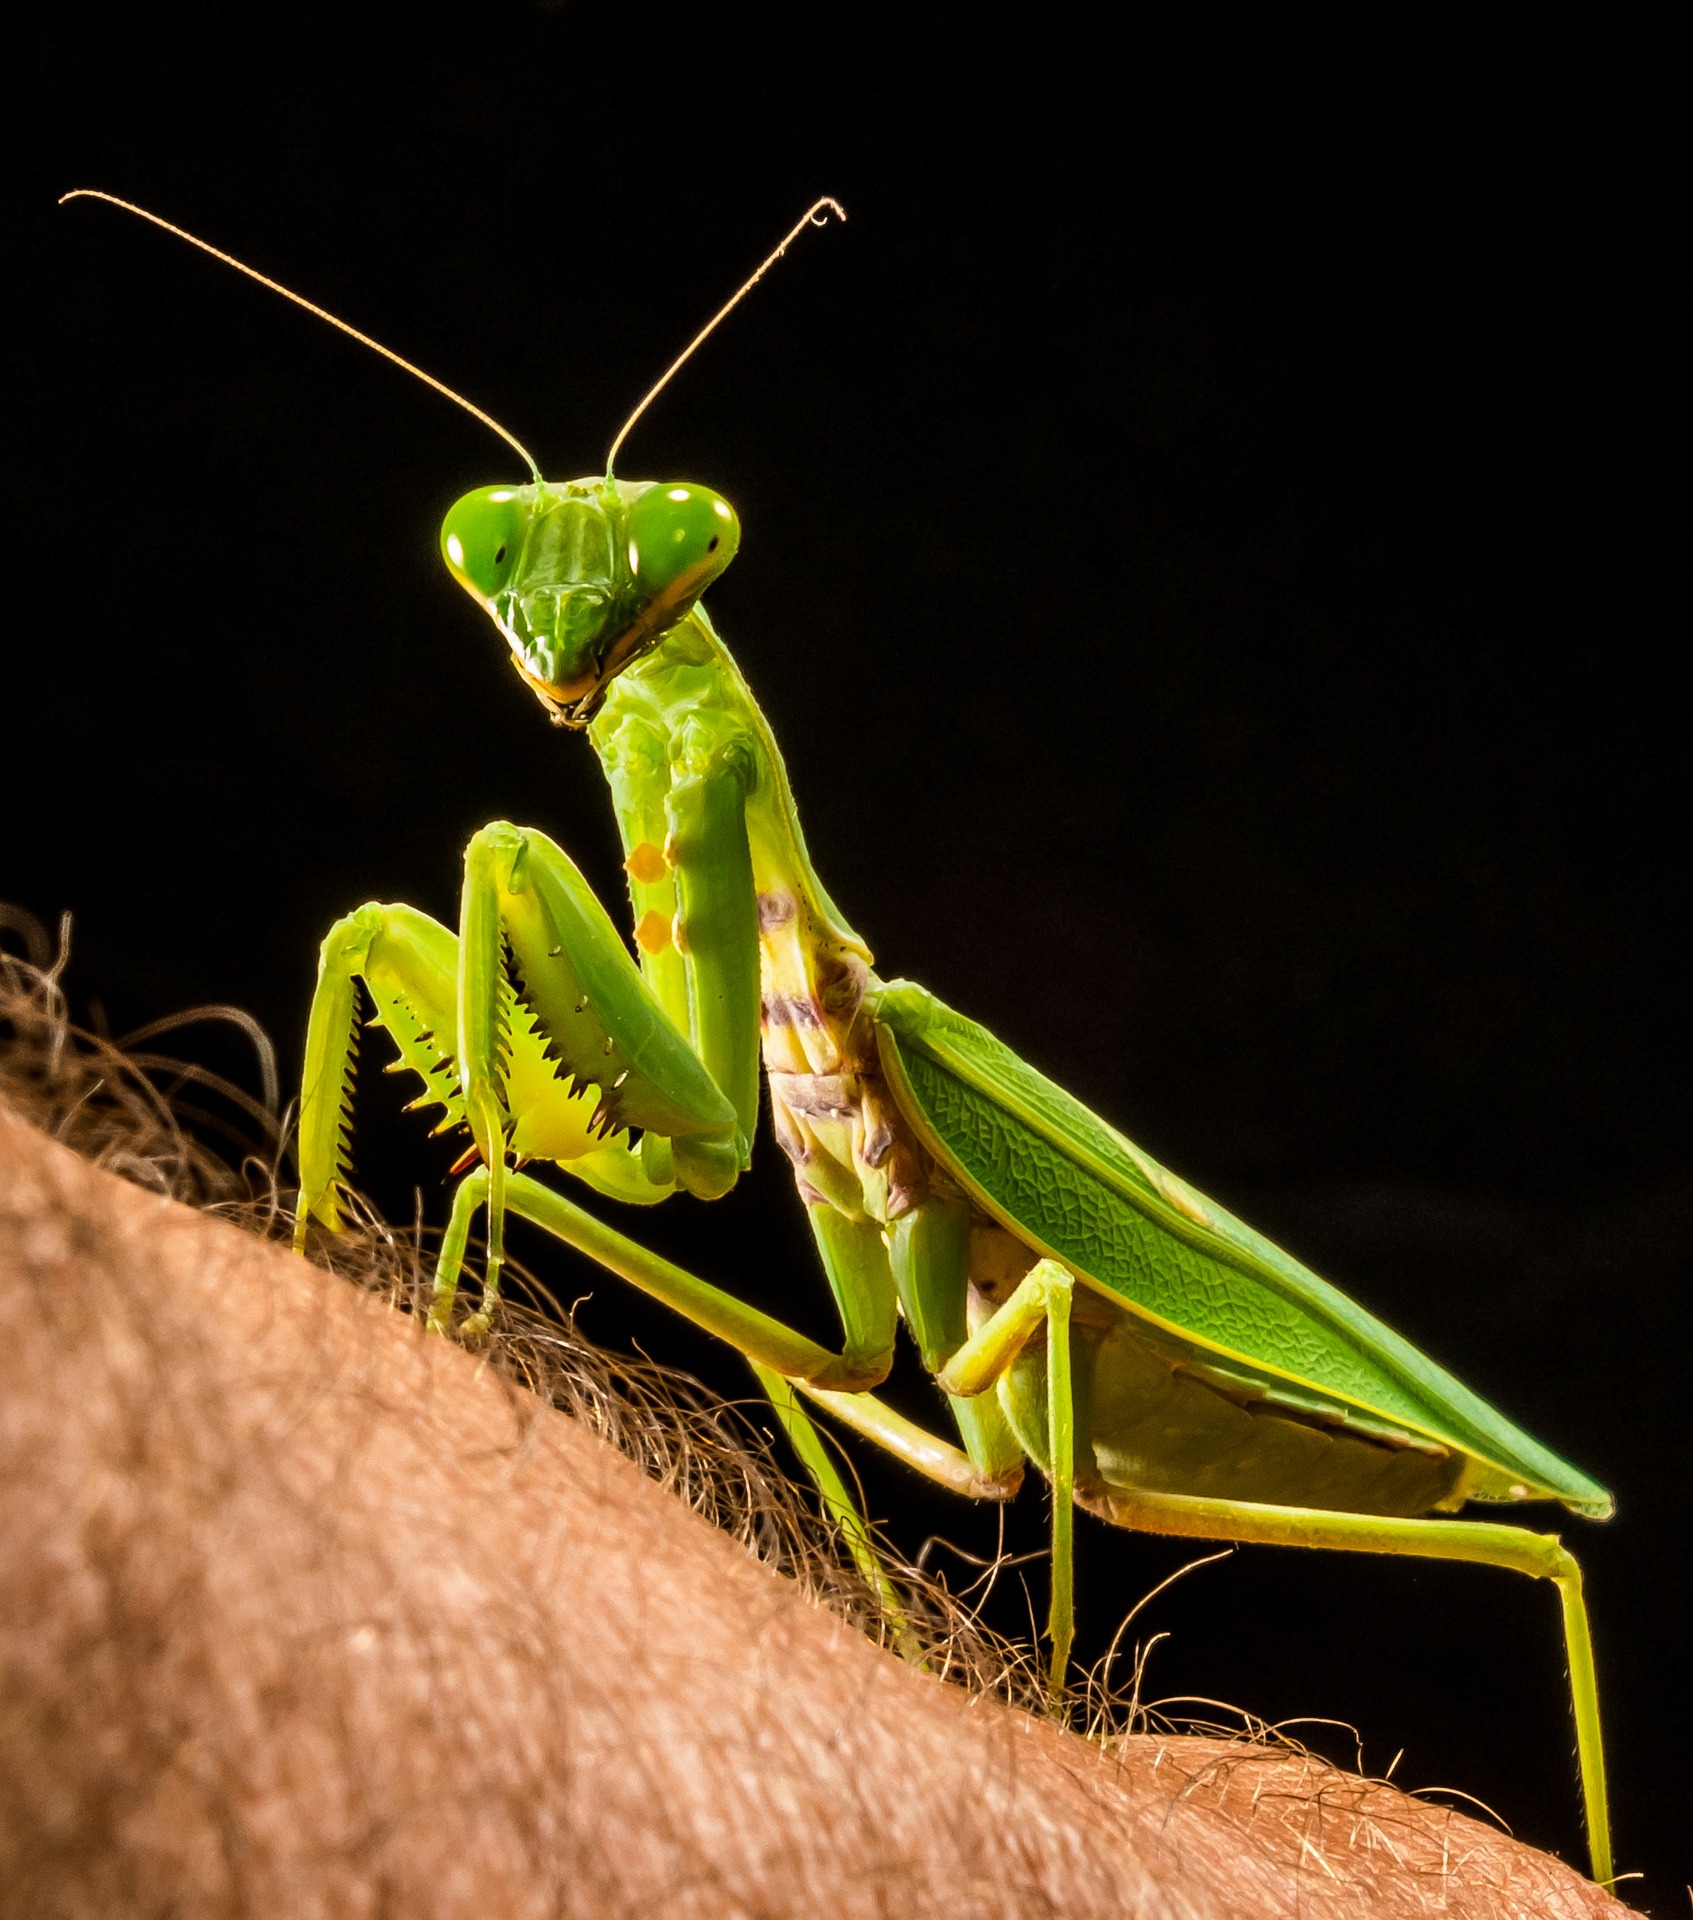 Pixabay image, praying mantis